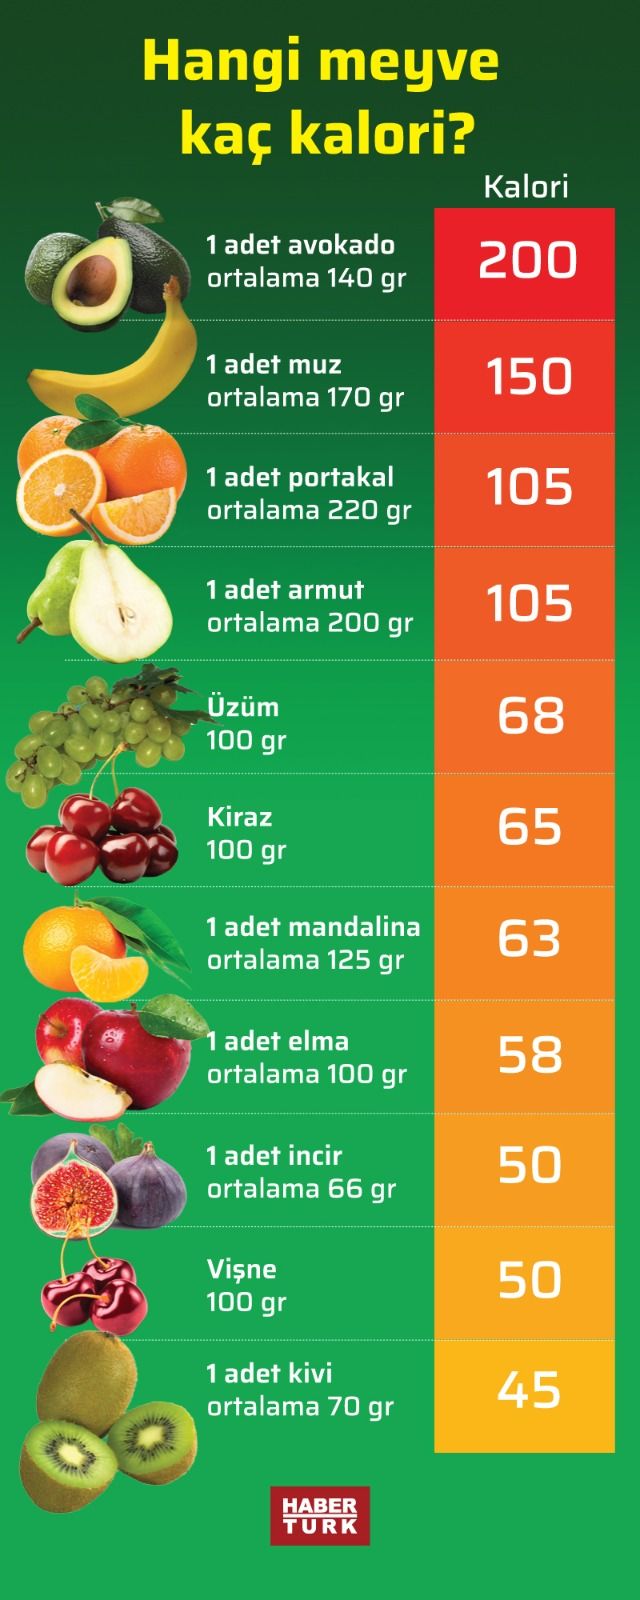 Hangi Meyve Kac Kalori Ht Gastro